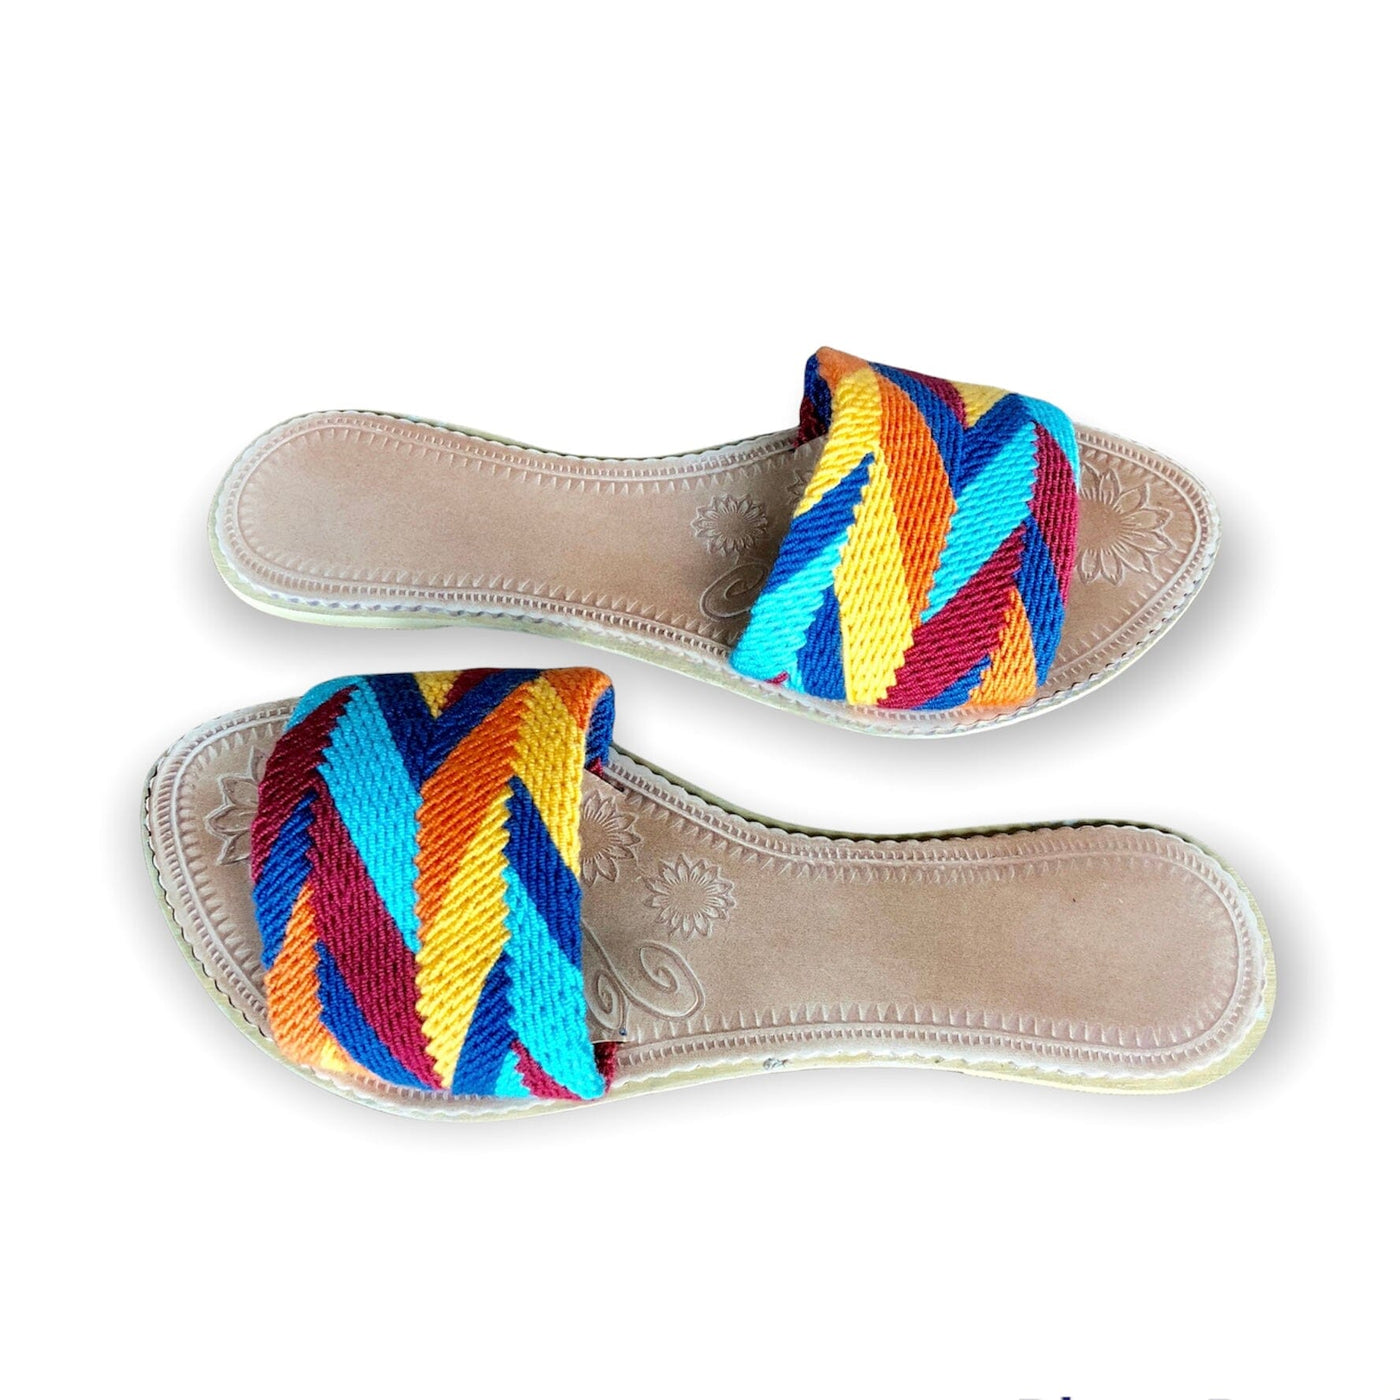 Desert Sunset Summer Sandals - Woven Slides Summer Sandals US 10 